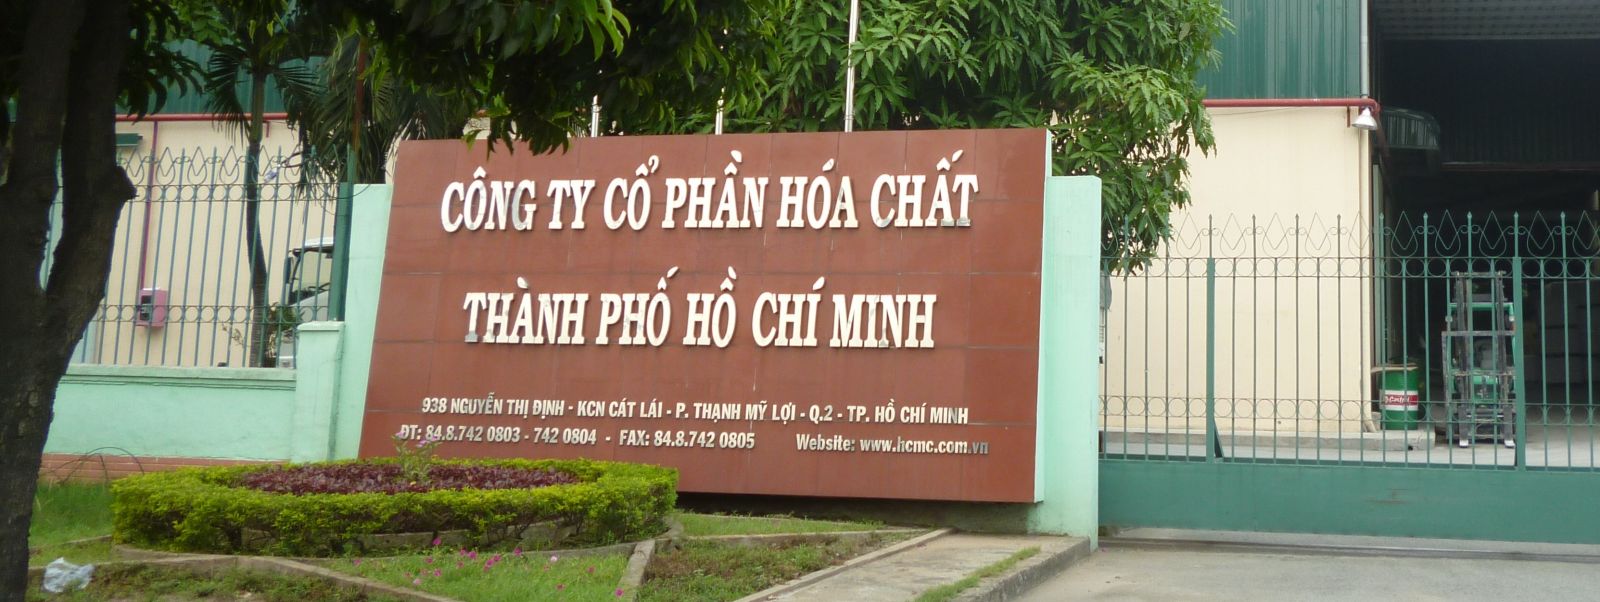 Công ty cổ phần hóa chất thành phố Hồ Chí Minh ảnh 2